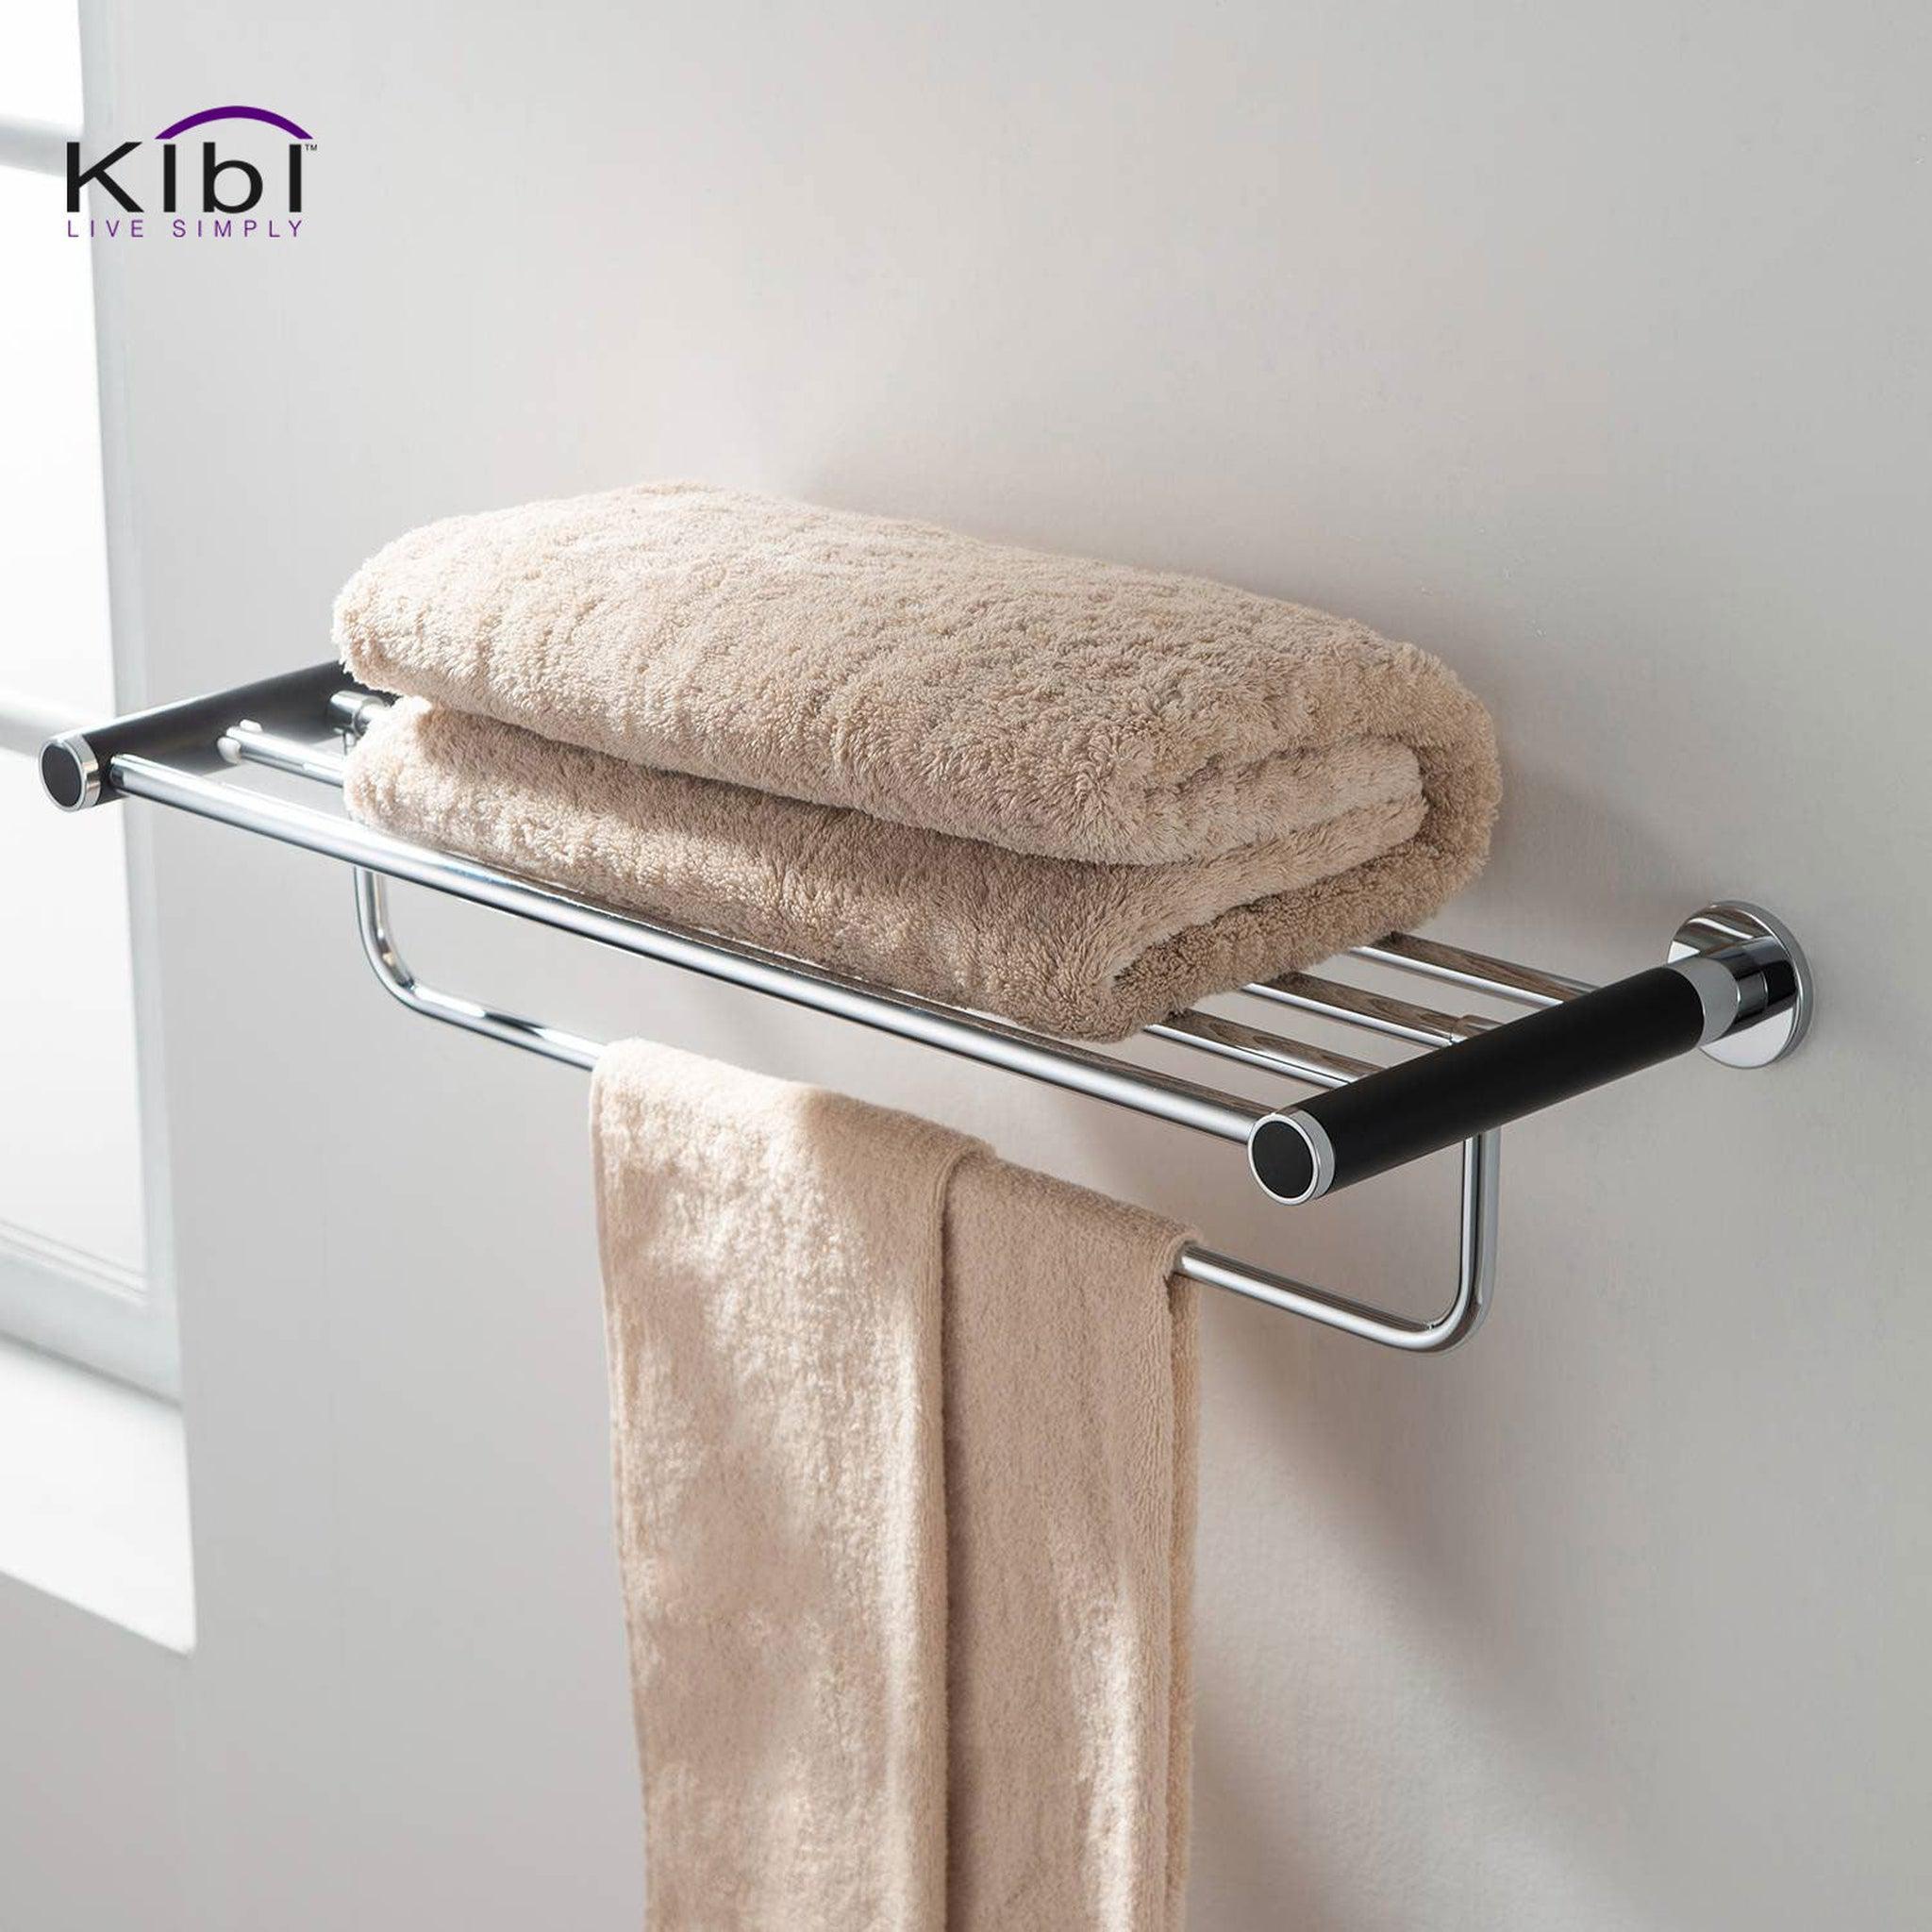 KIBI, KIBI Abaco Towel Rack in Chrome Black Finish